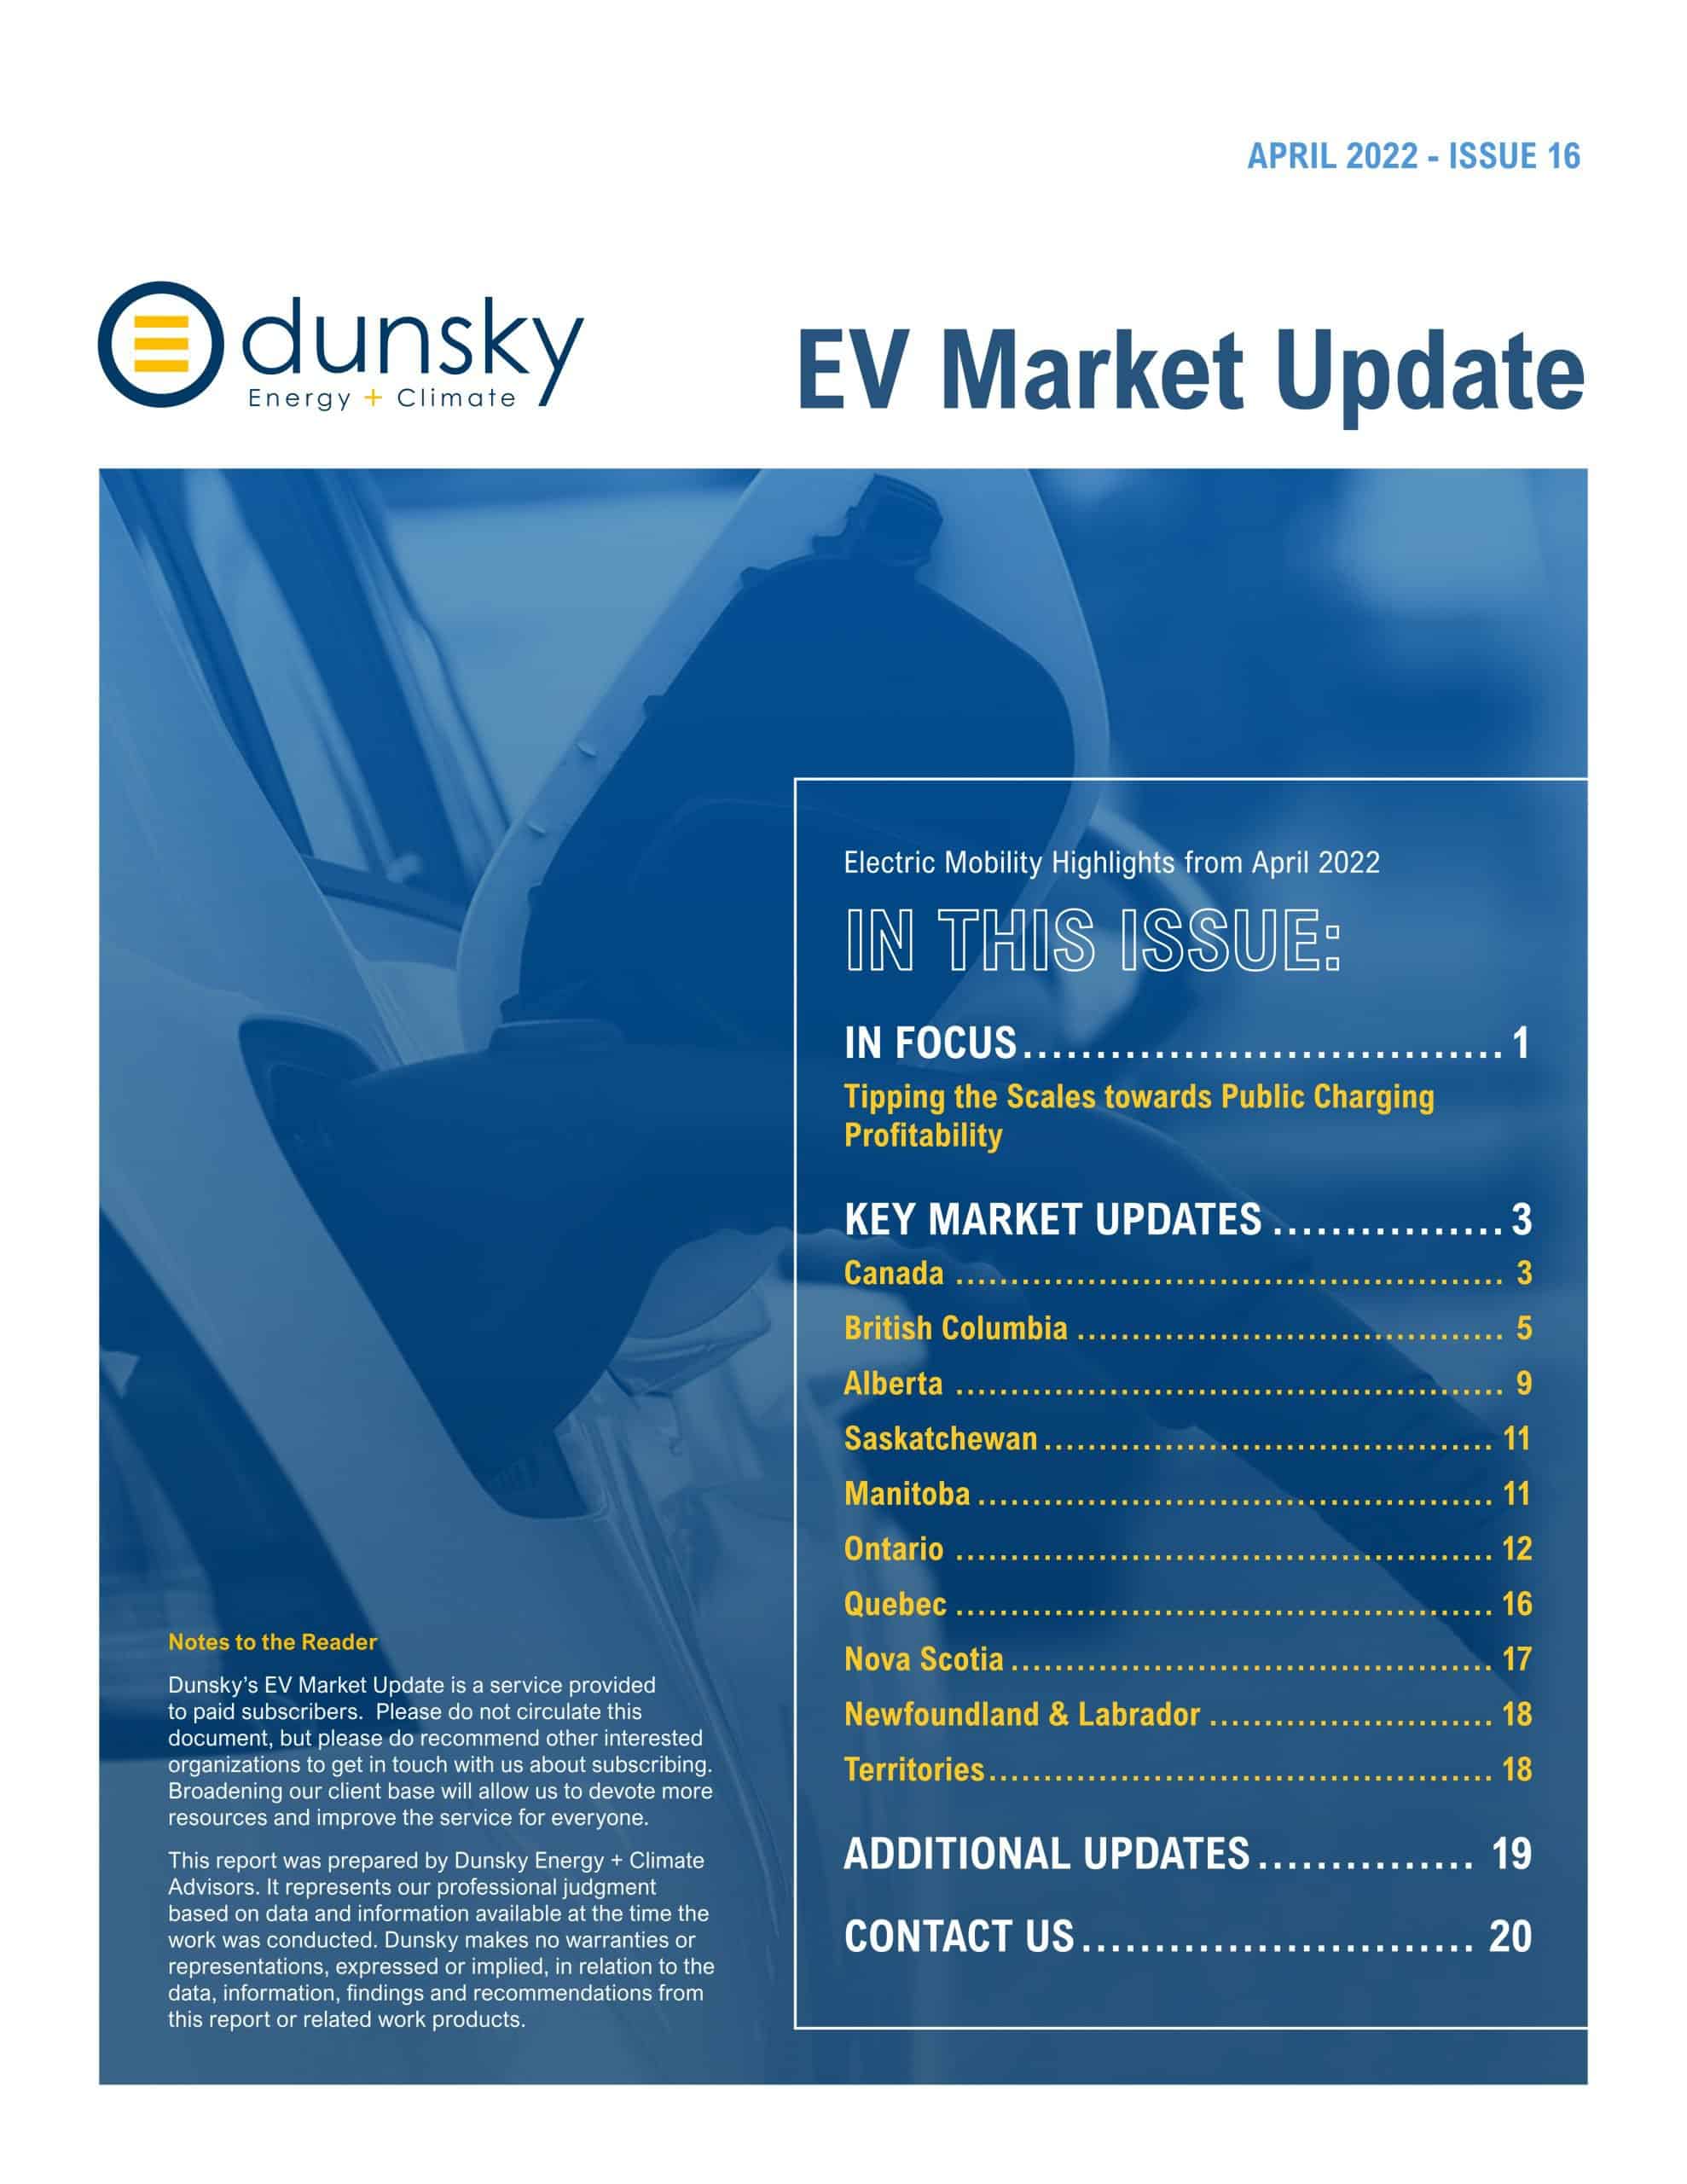 Dunsky Canadian EV Market Update Issue 17 - April 2022